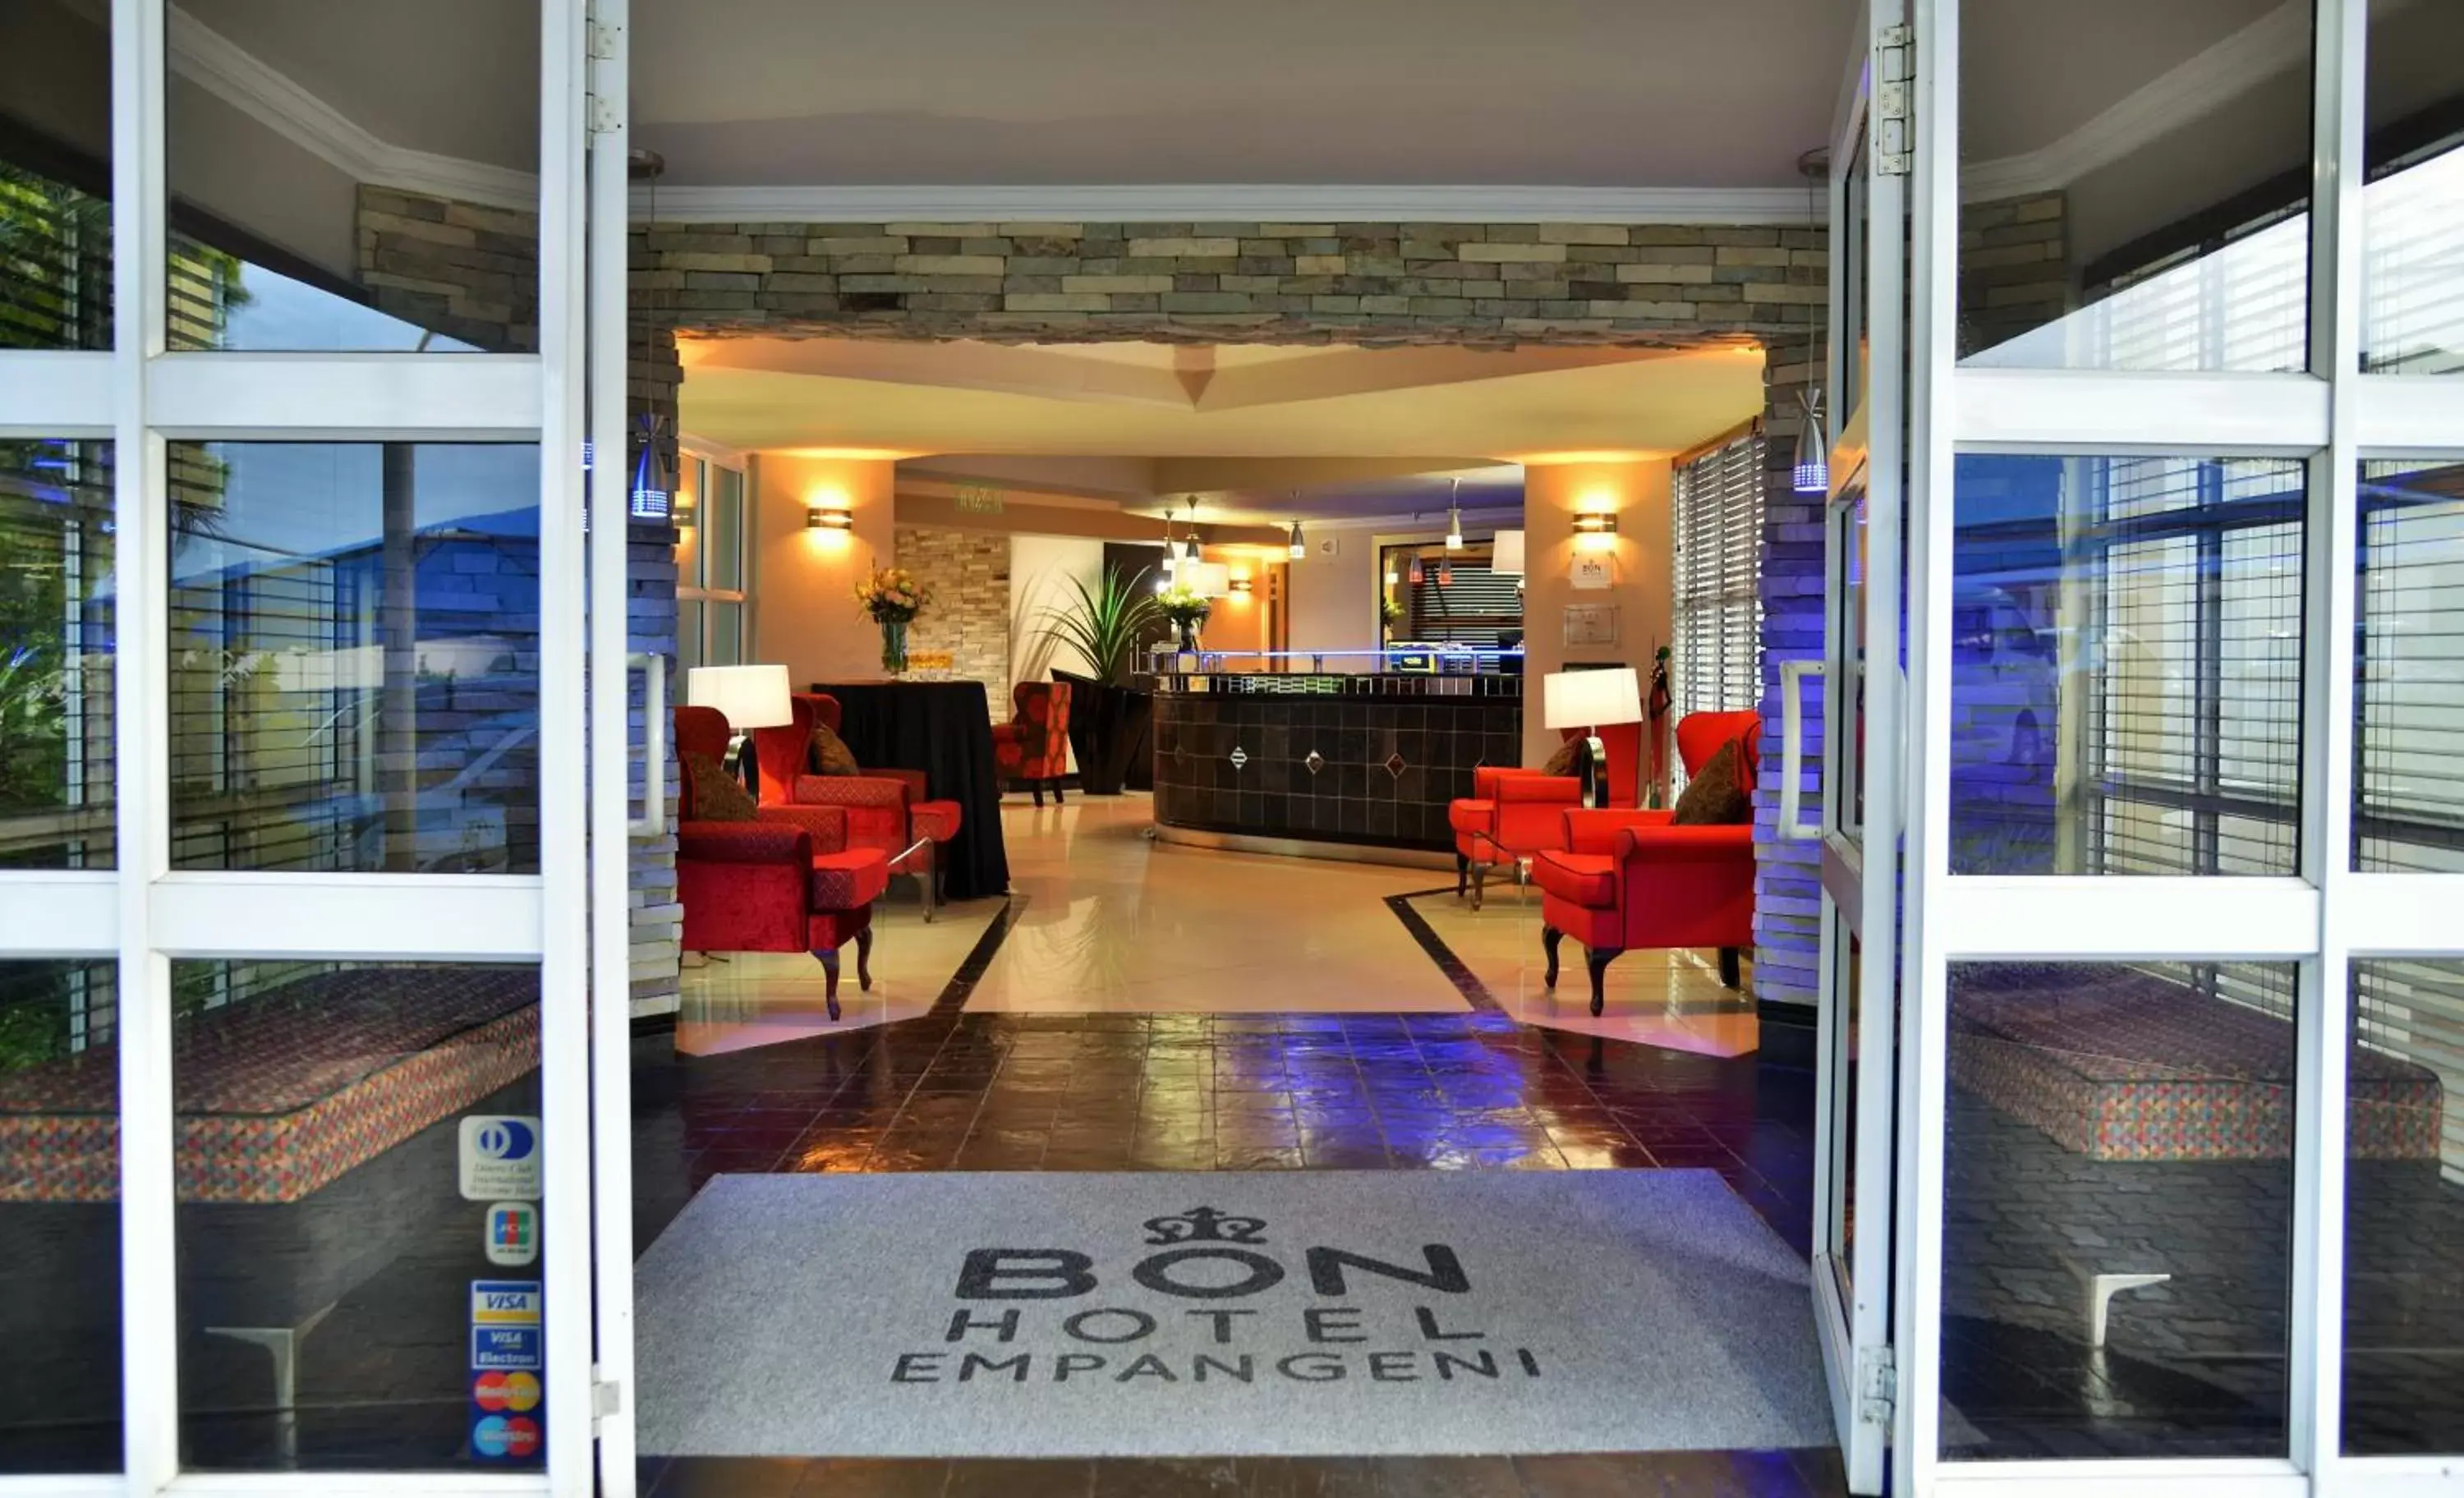 Facade/entrance in BON Hotel Empangeni